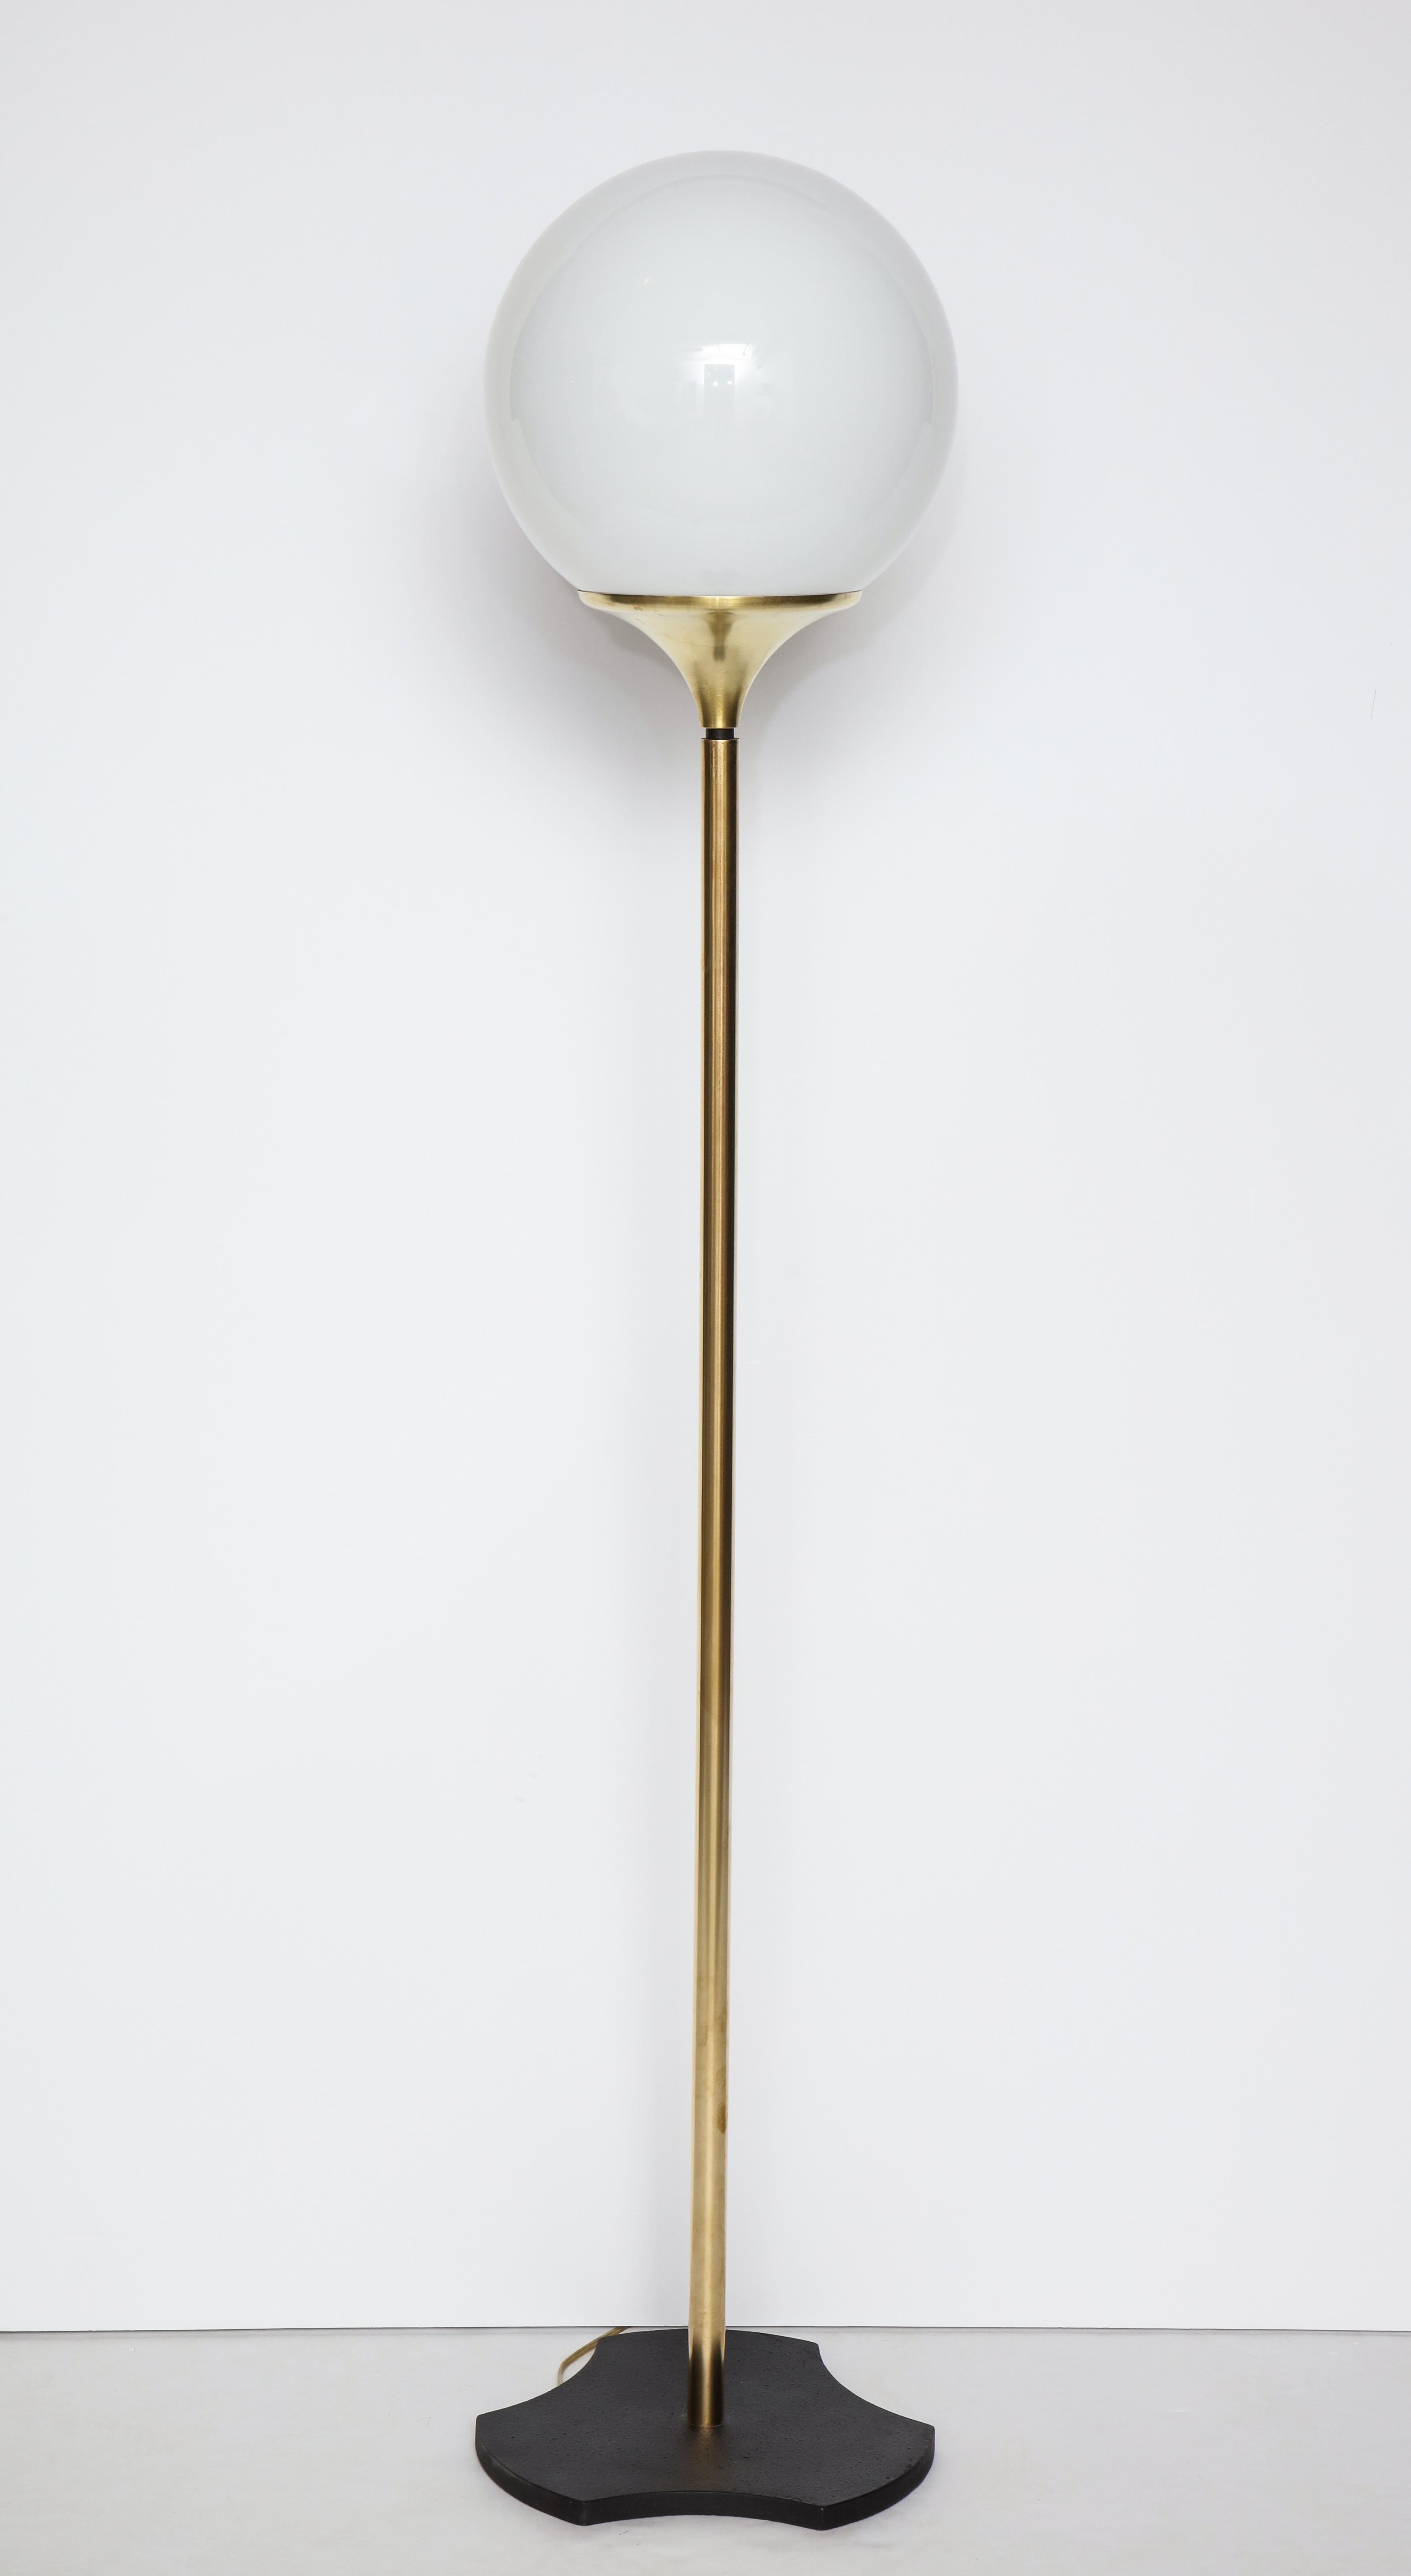 Opaline Glass Italian 1960s Floor Lamp with Opaque Glass Globe Fixture